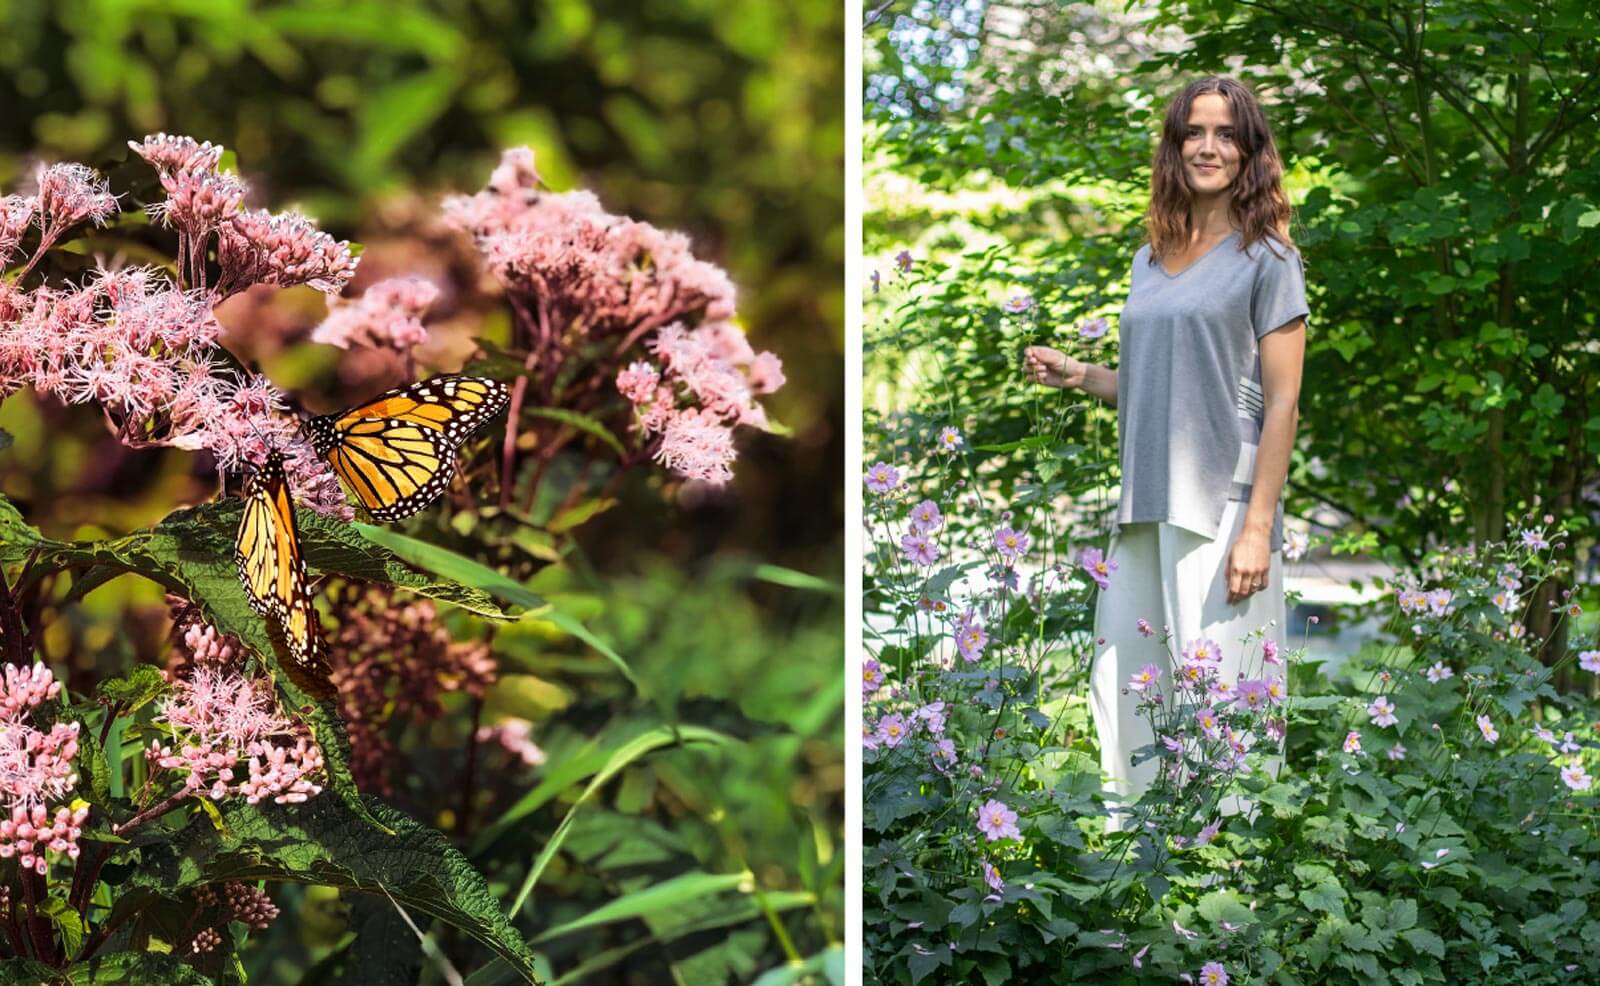 Woman standing in a flower garden with butterflies